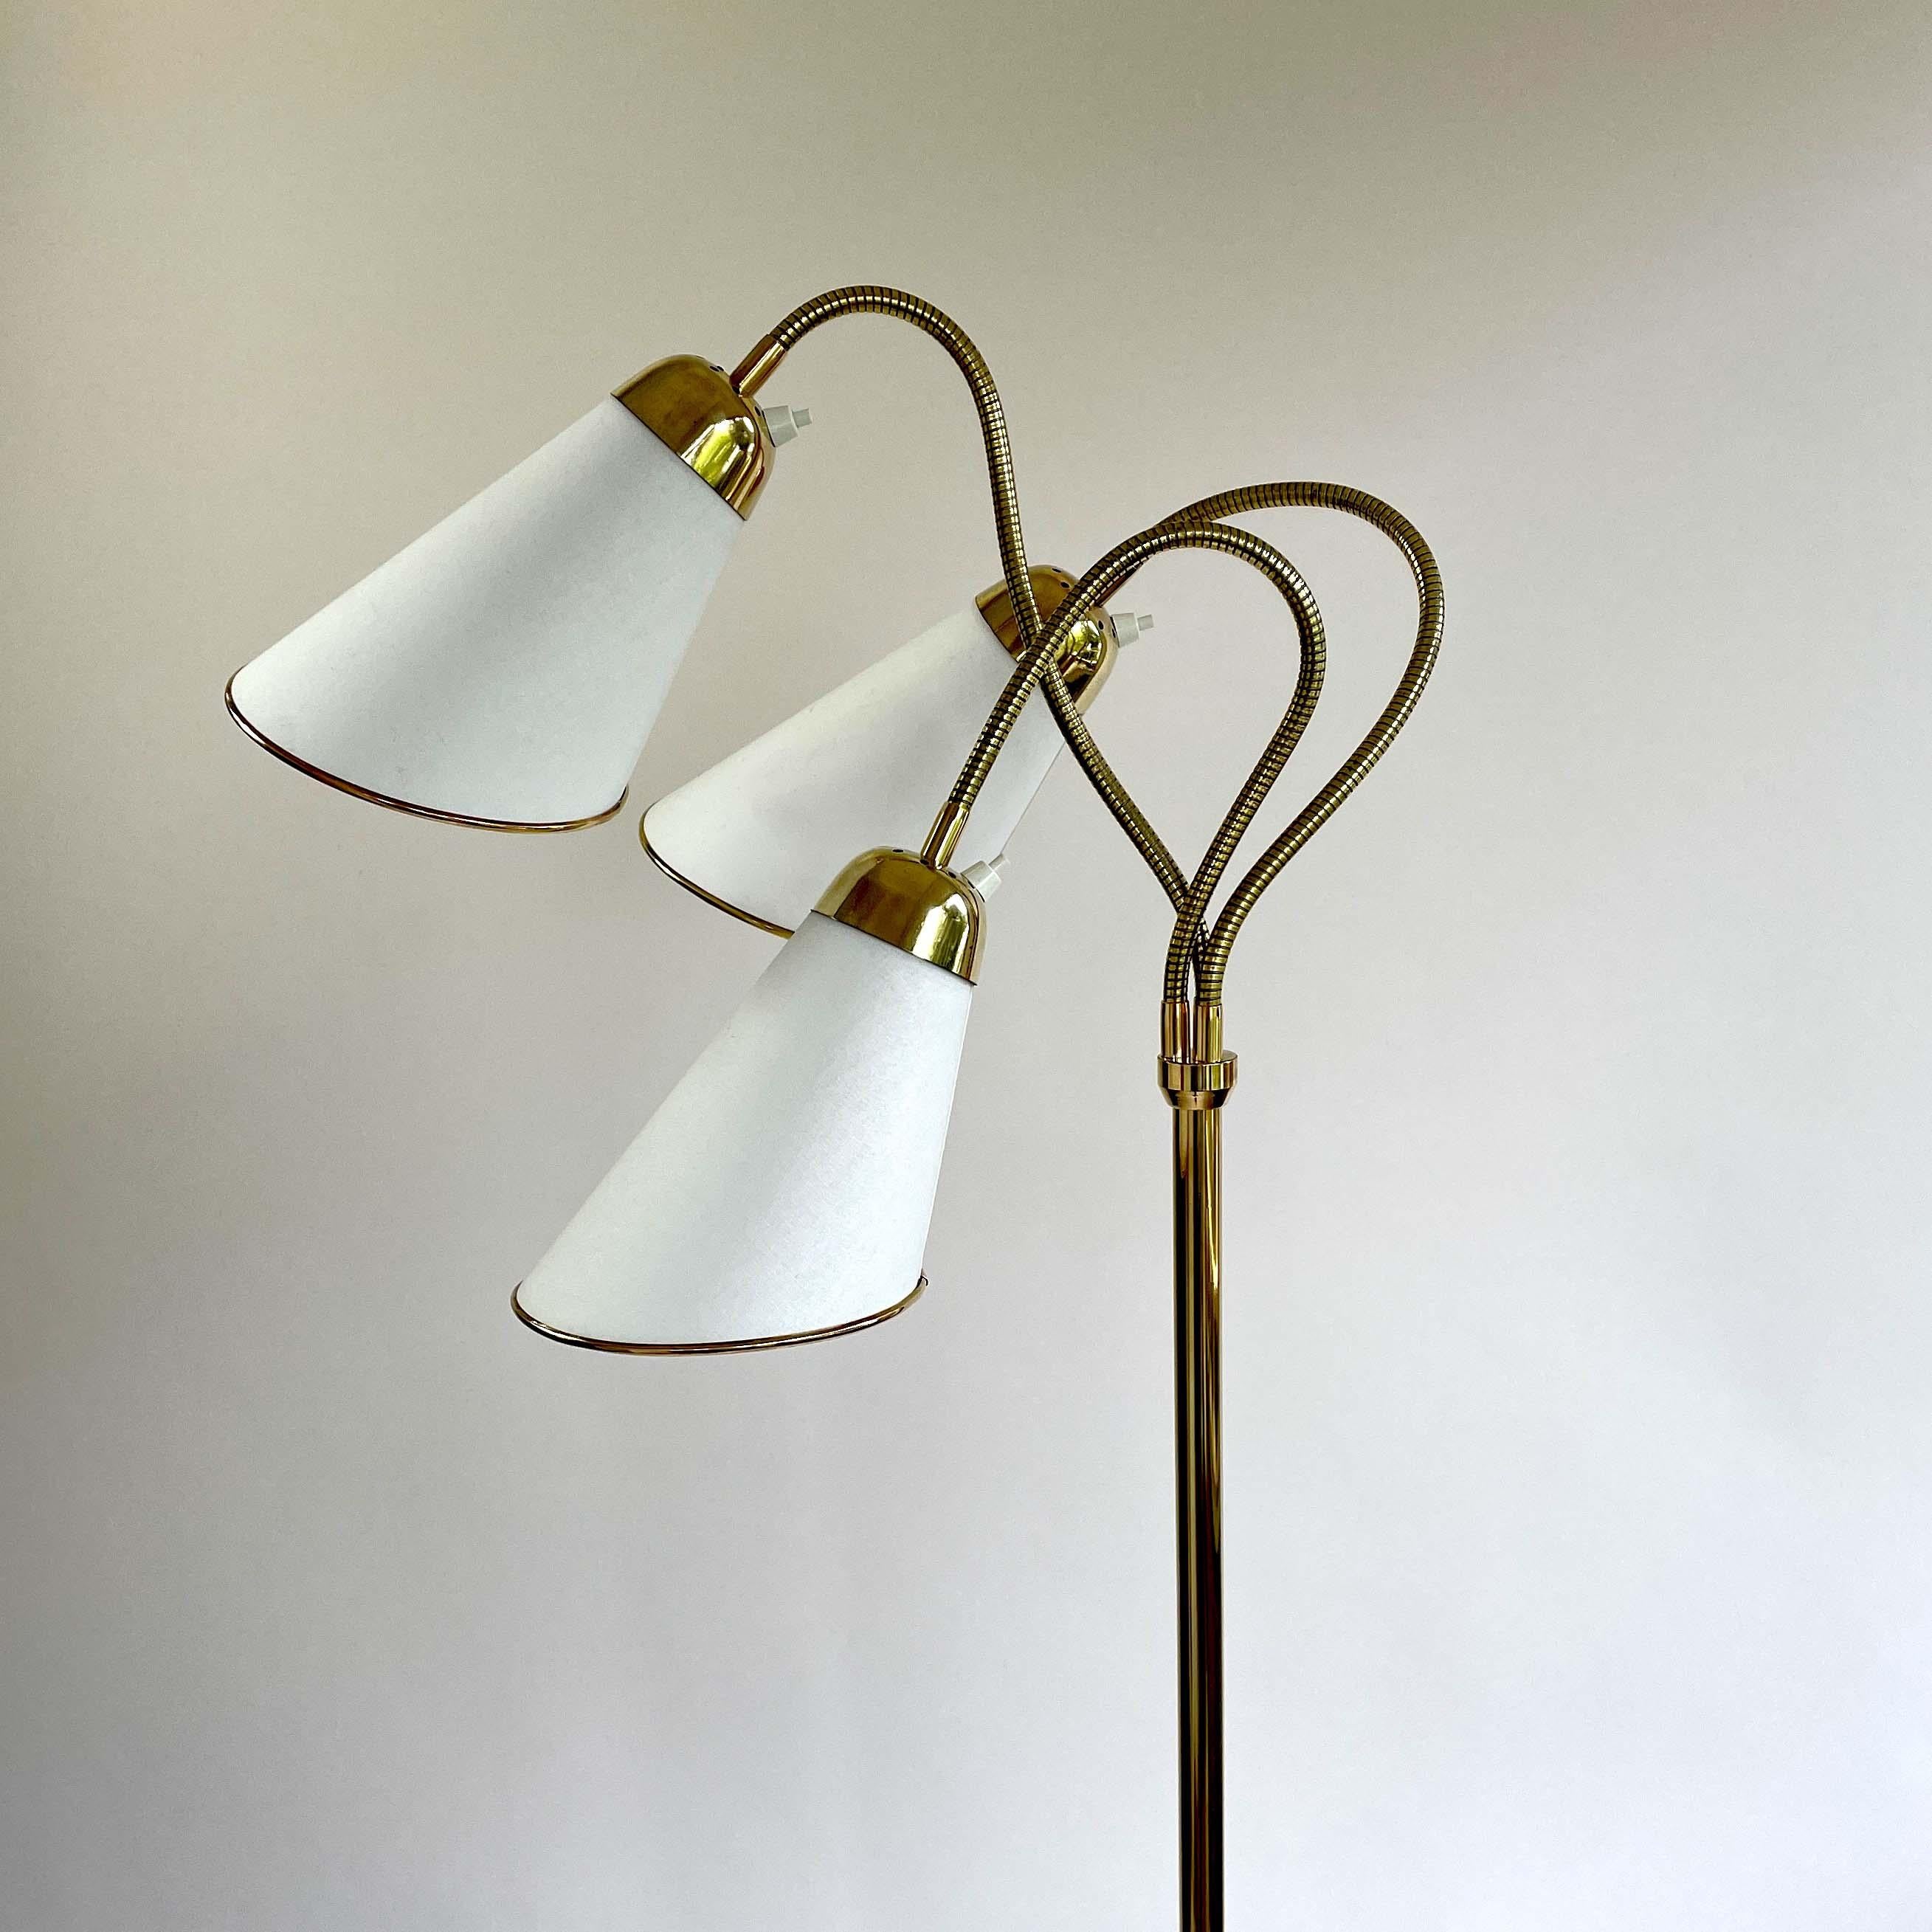 Triple Gooseneck Brass & Off White Fabric Floor Lamp, Sweden 1950s For Sale 9